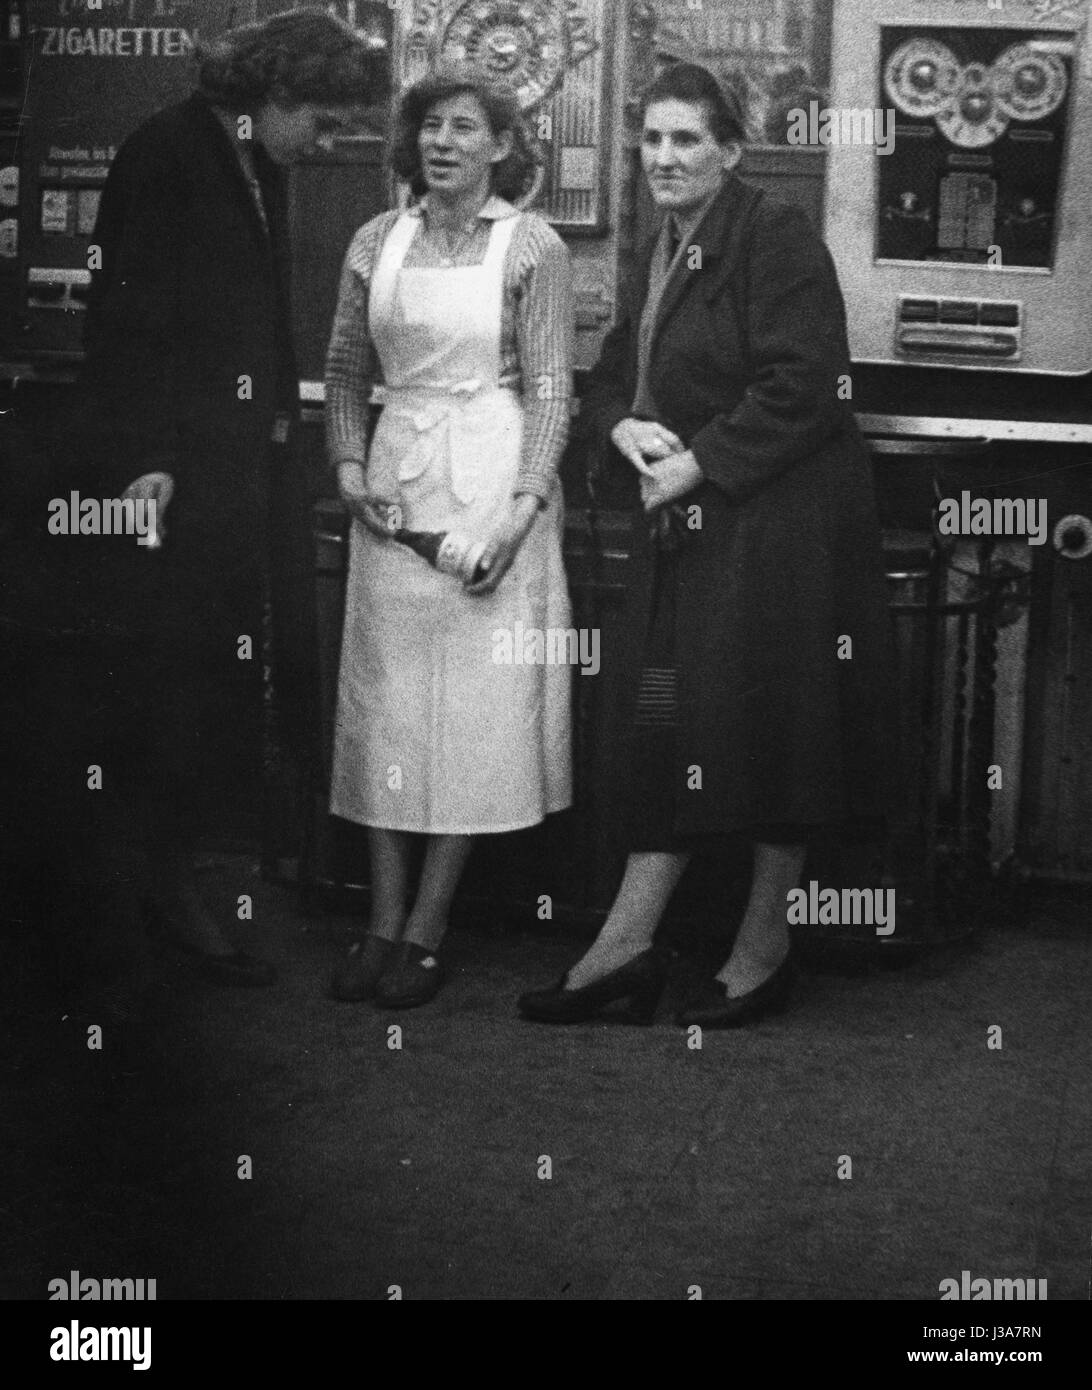 Les femmes sur la Reeperbahn à Hambourg, 1956 Banque D'Images